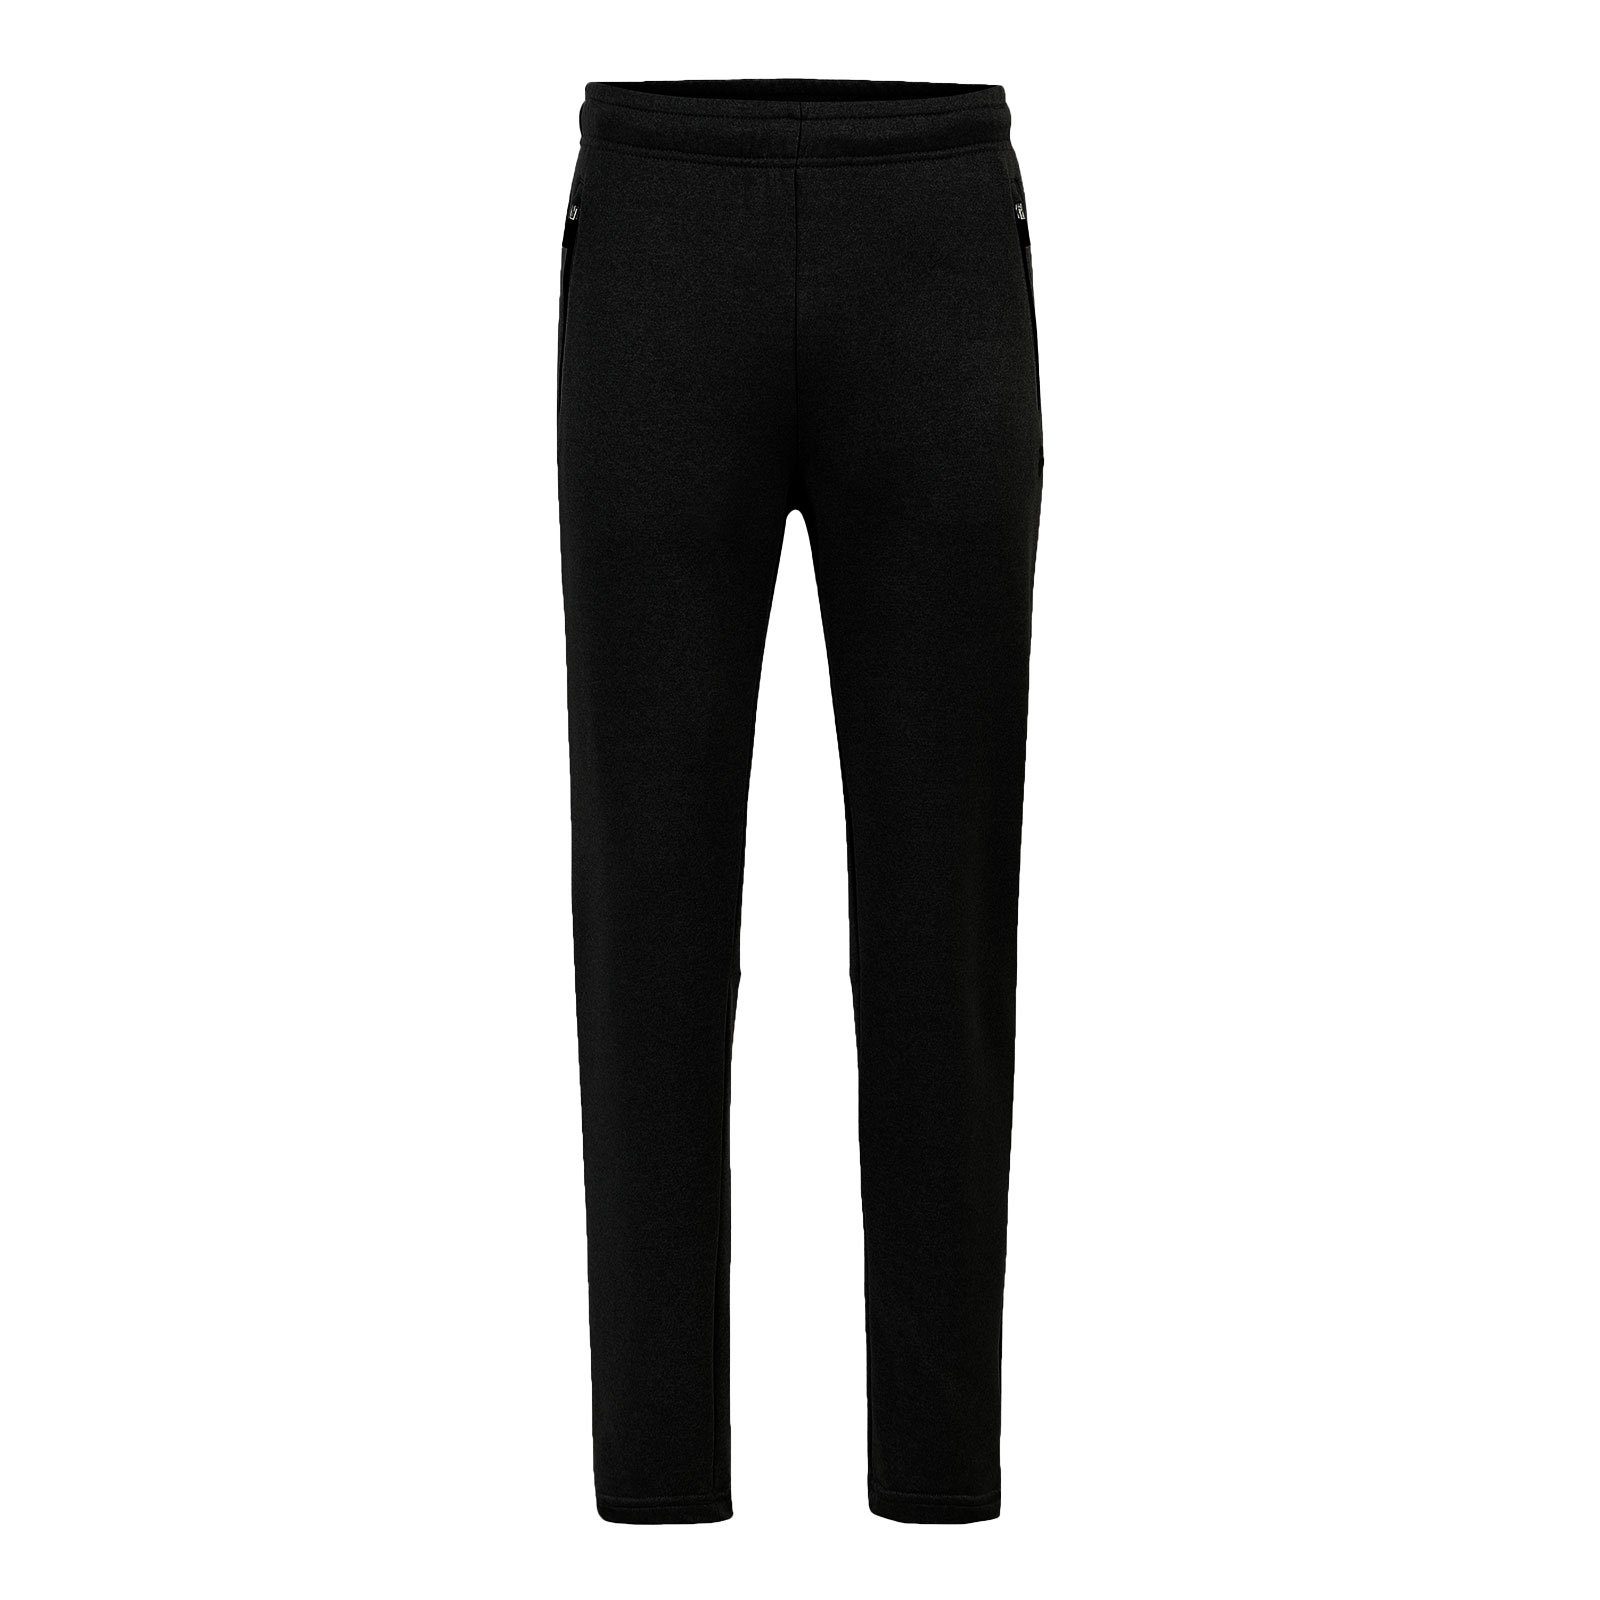 Fila Sweathose Lanz Sweatpants mit reflektierendem Logo auf dem linken Oberschenkel 80010 black